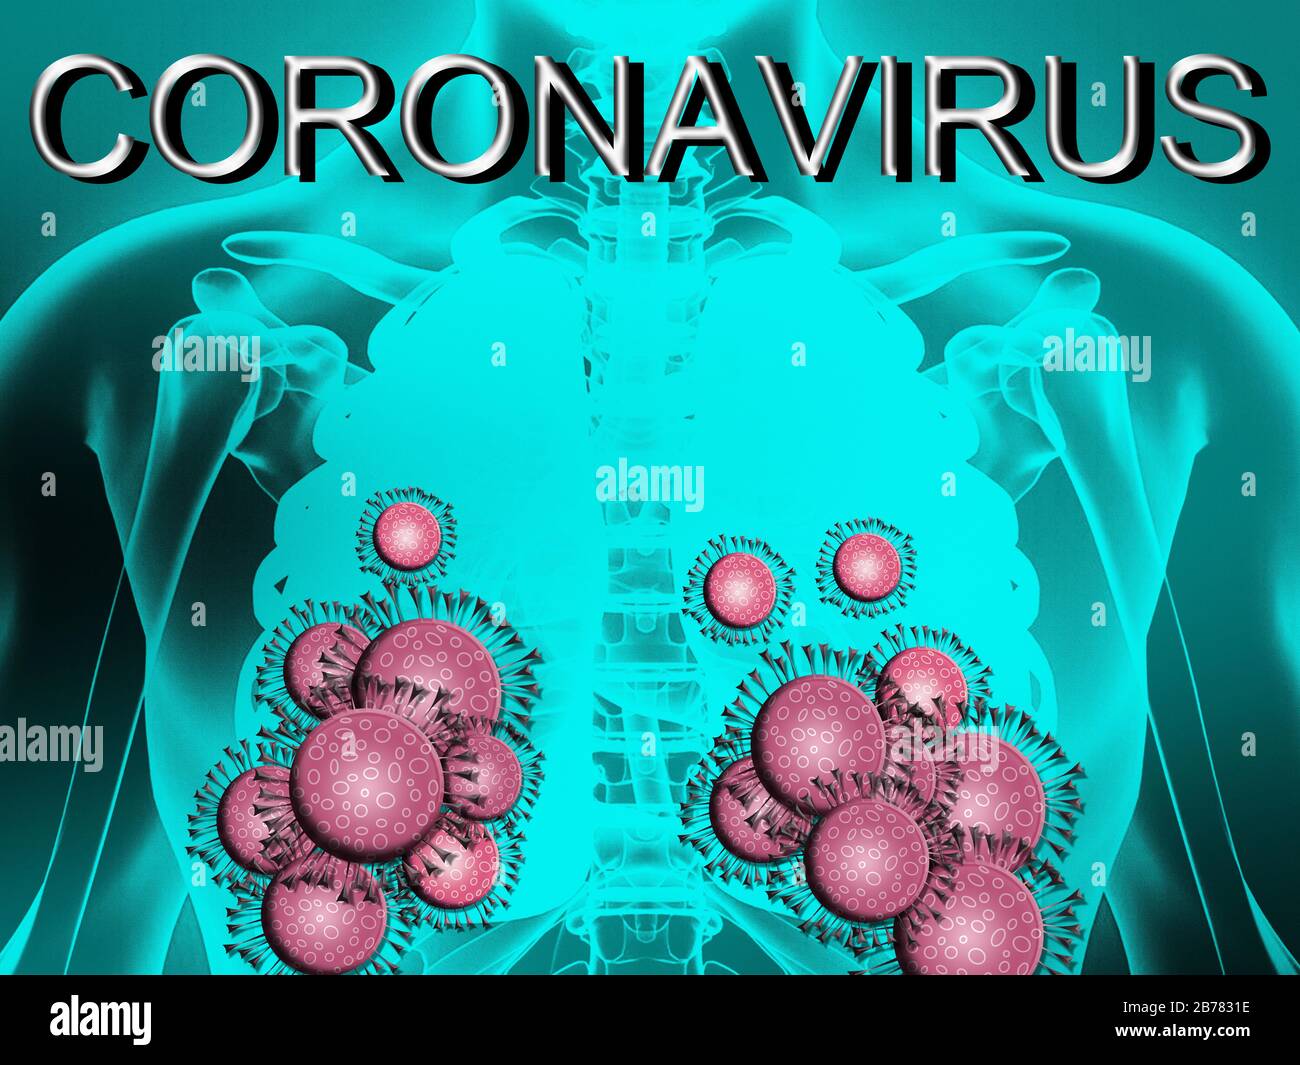 Abbildung: Mit Coronavirus infizierte Lungen. Covid-19-Moleküle lagerten sich auf der Lunge ab. Blauer Hintergrund und Beschriftung Coronavirus. Stockfoto